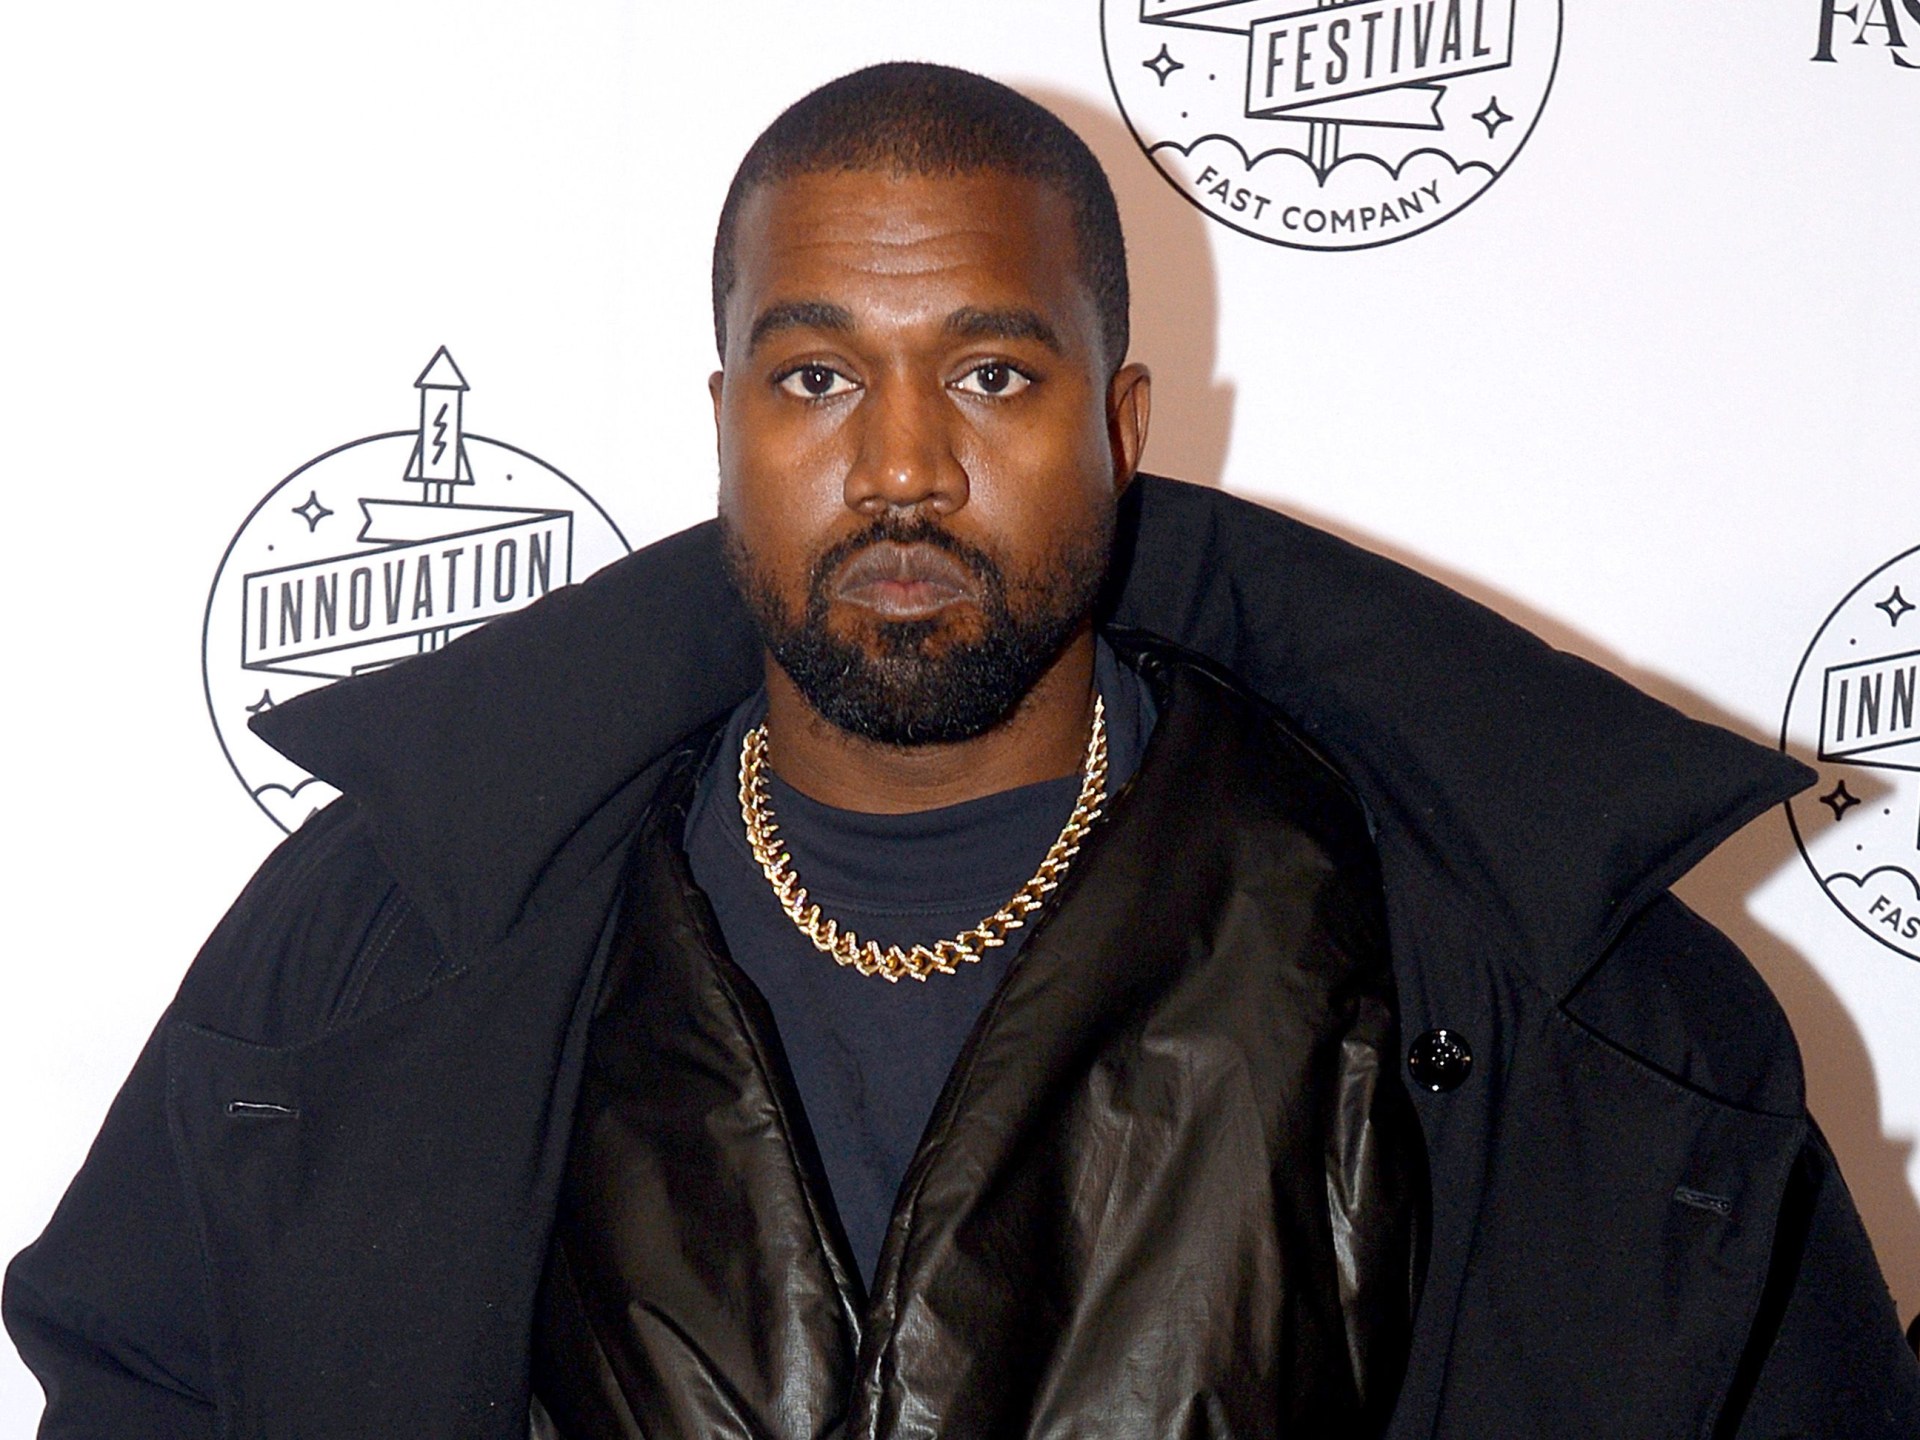 Kanye West escoltado de la oficina de Skechers, dice marca de zapatos |  noticias sobre racismo